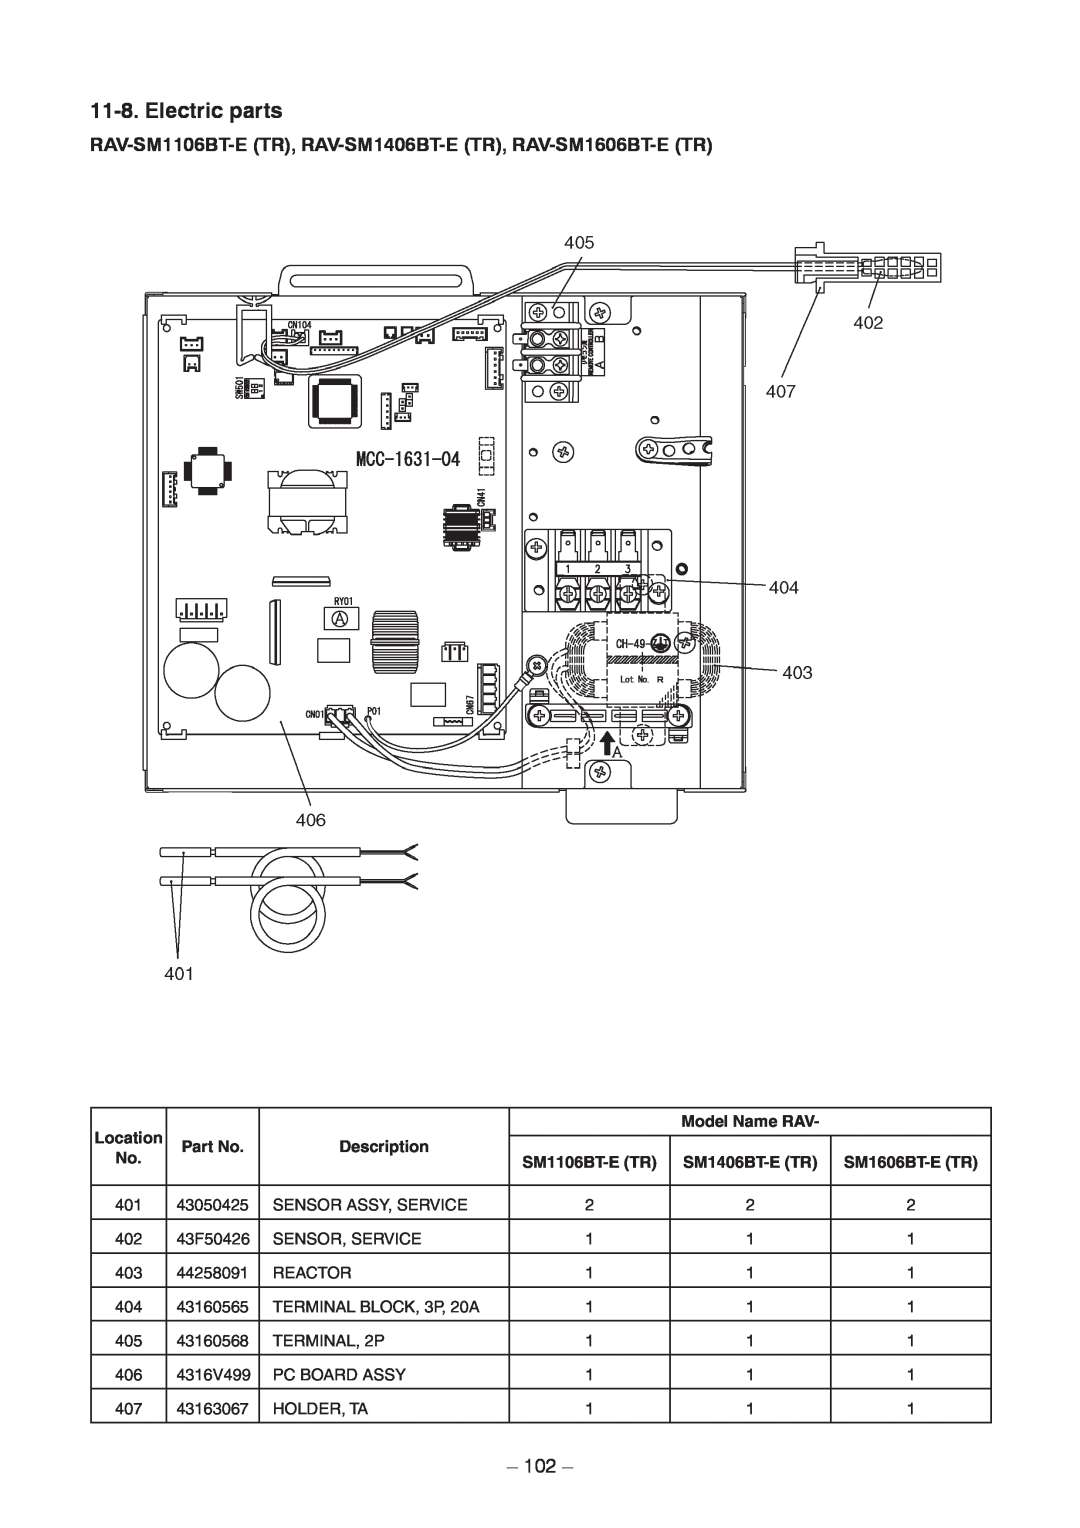 Toshiba RAV-SM566BT-TR, RAV-SM406BT-TR Location, Model Name RAV, Description, SM1106BT-E TR, SM1406BT-E TR, SM1606BT-E TR 